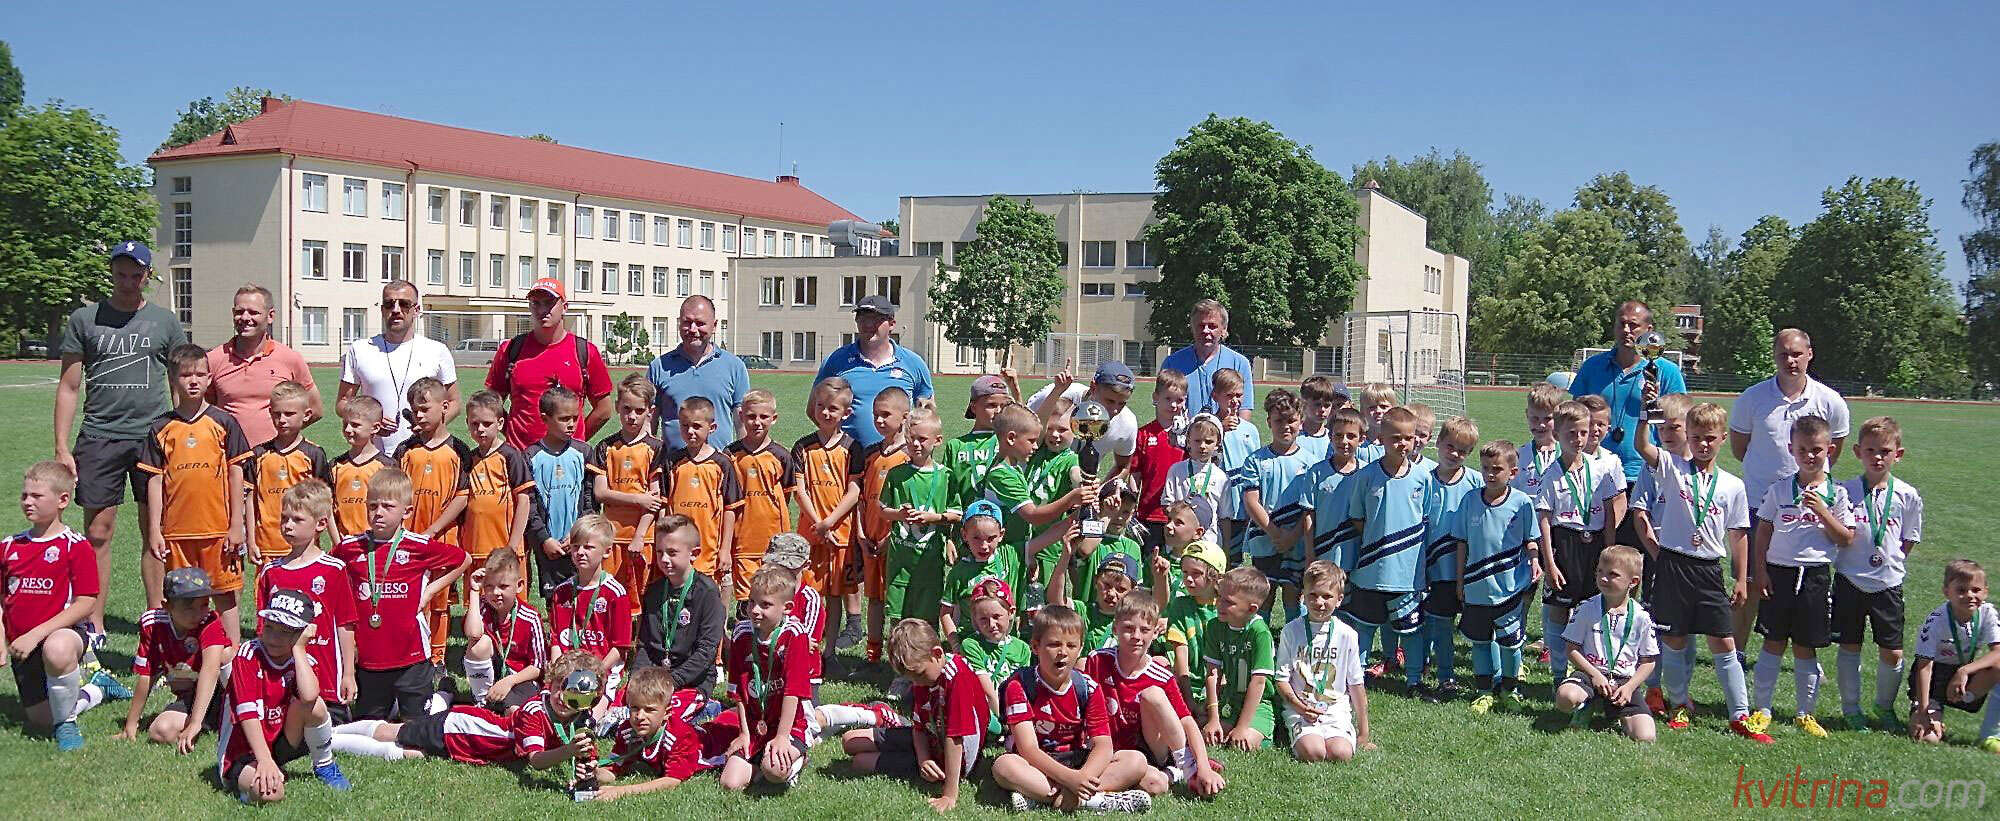 Būk Birštone. Tarptautinis vaikų futbolo turnyras. Finalai ir apdovanojimai (Fotoreportažas)